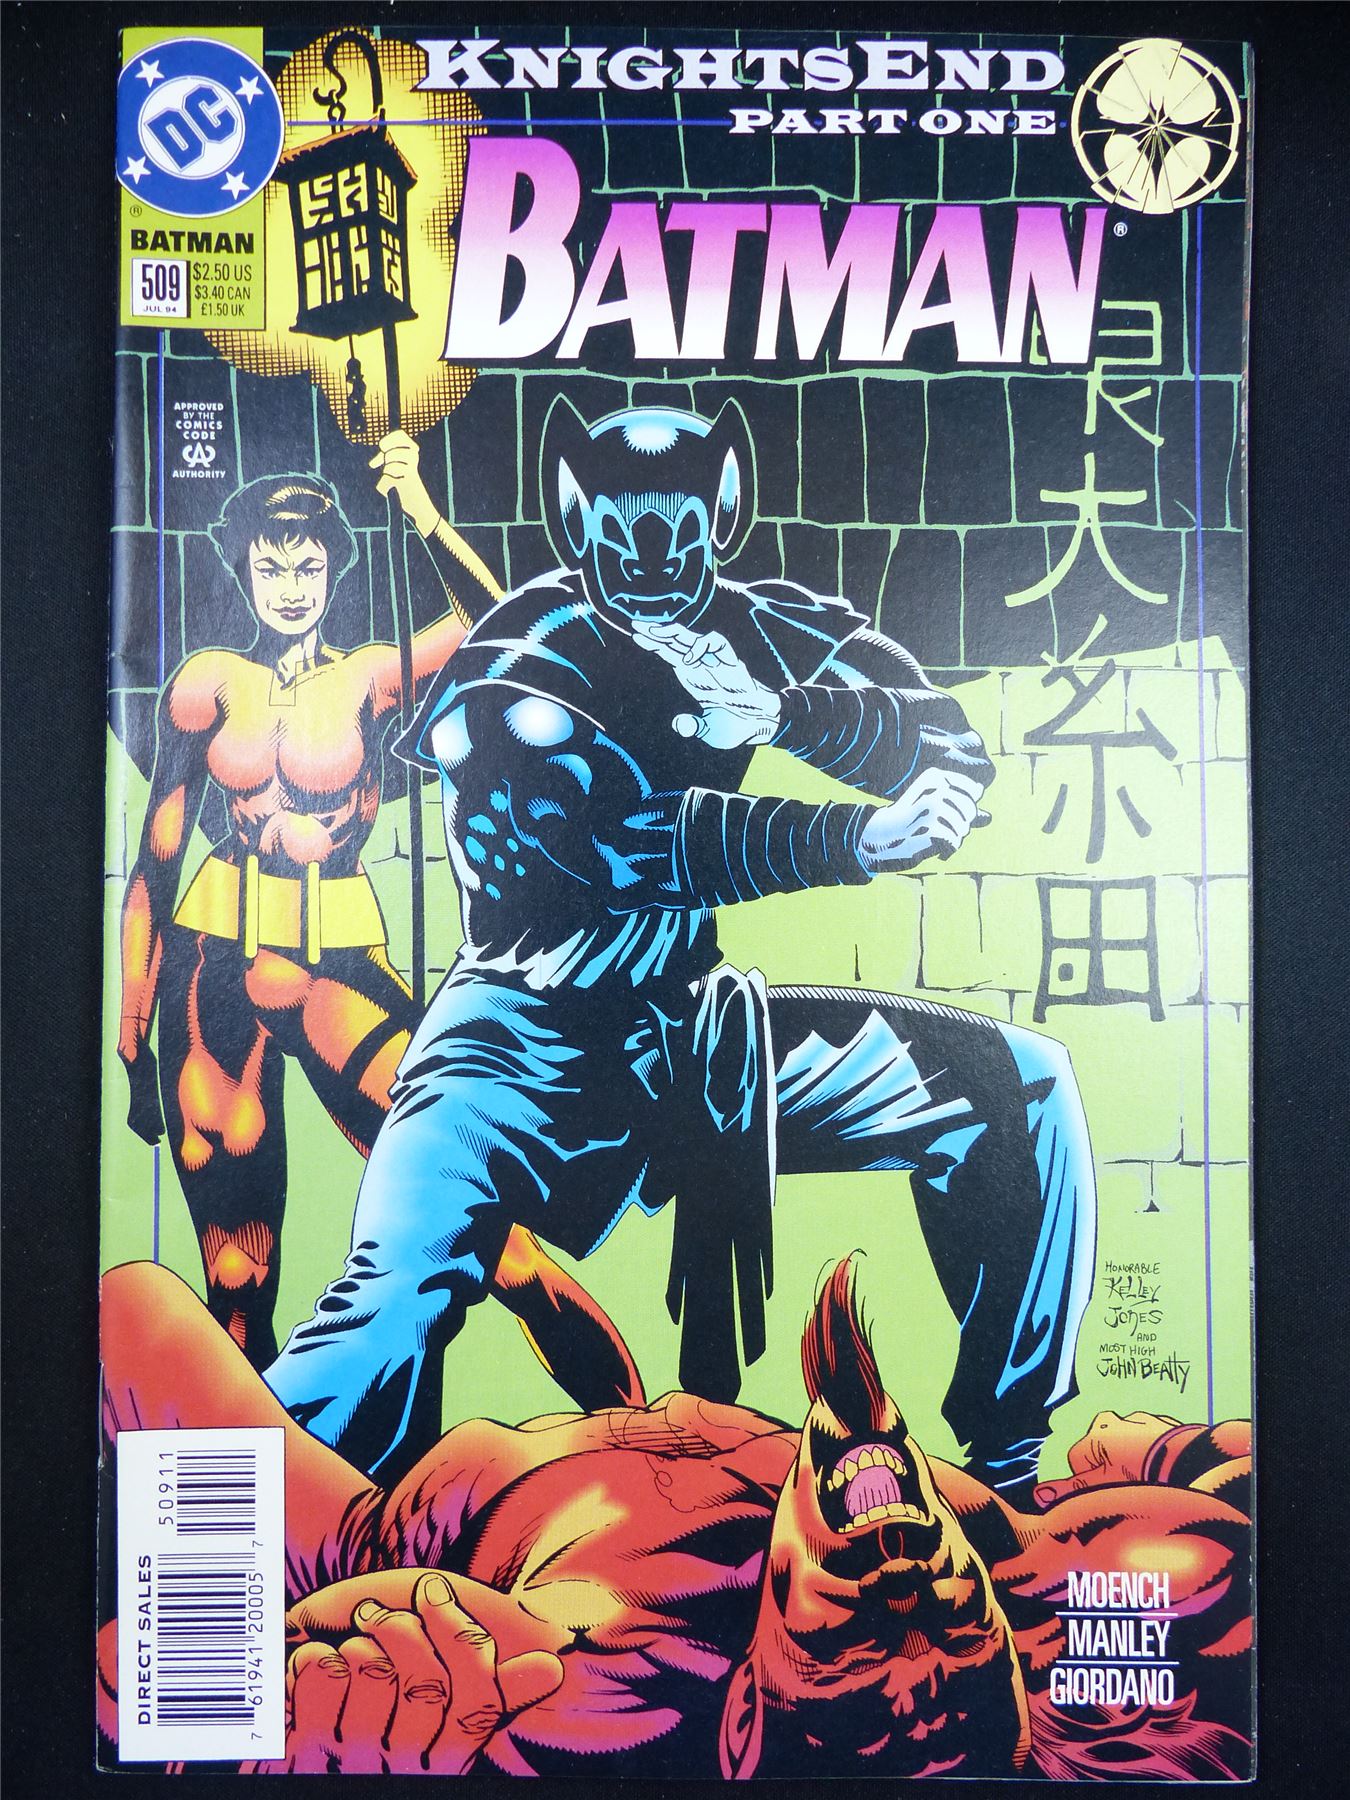 BATMAN: Knights End part one #509 - DC Comic Jul 94 #IS – Archeron